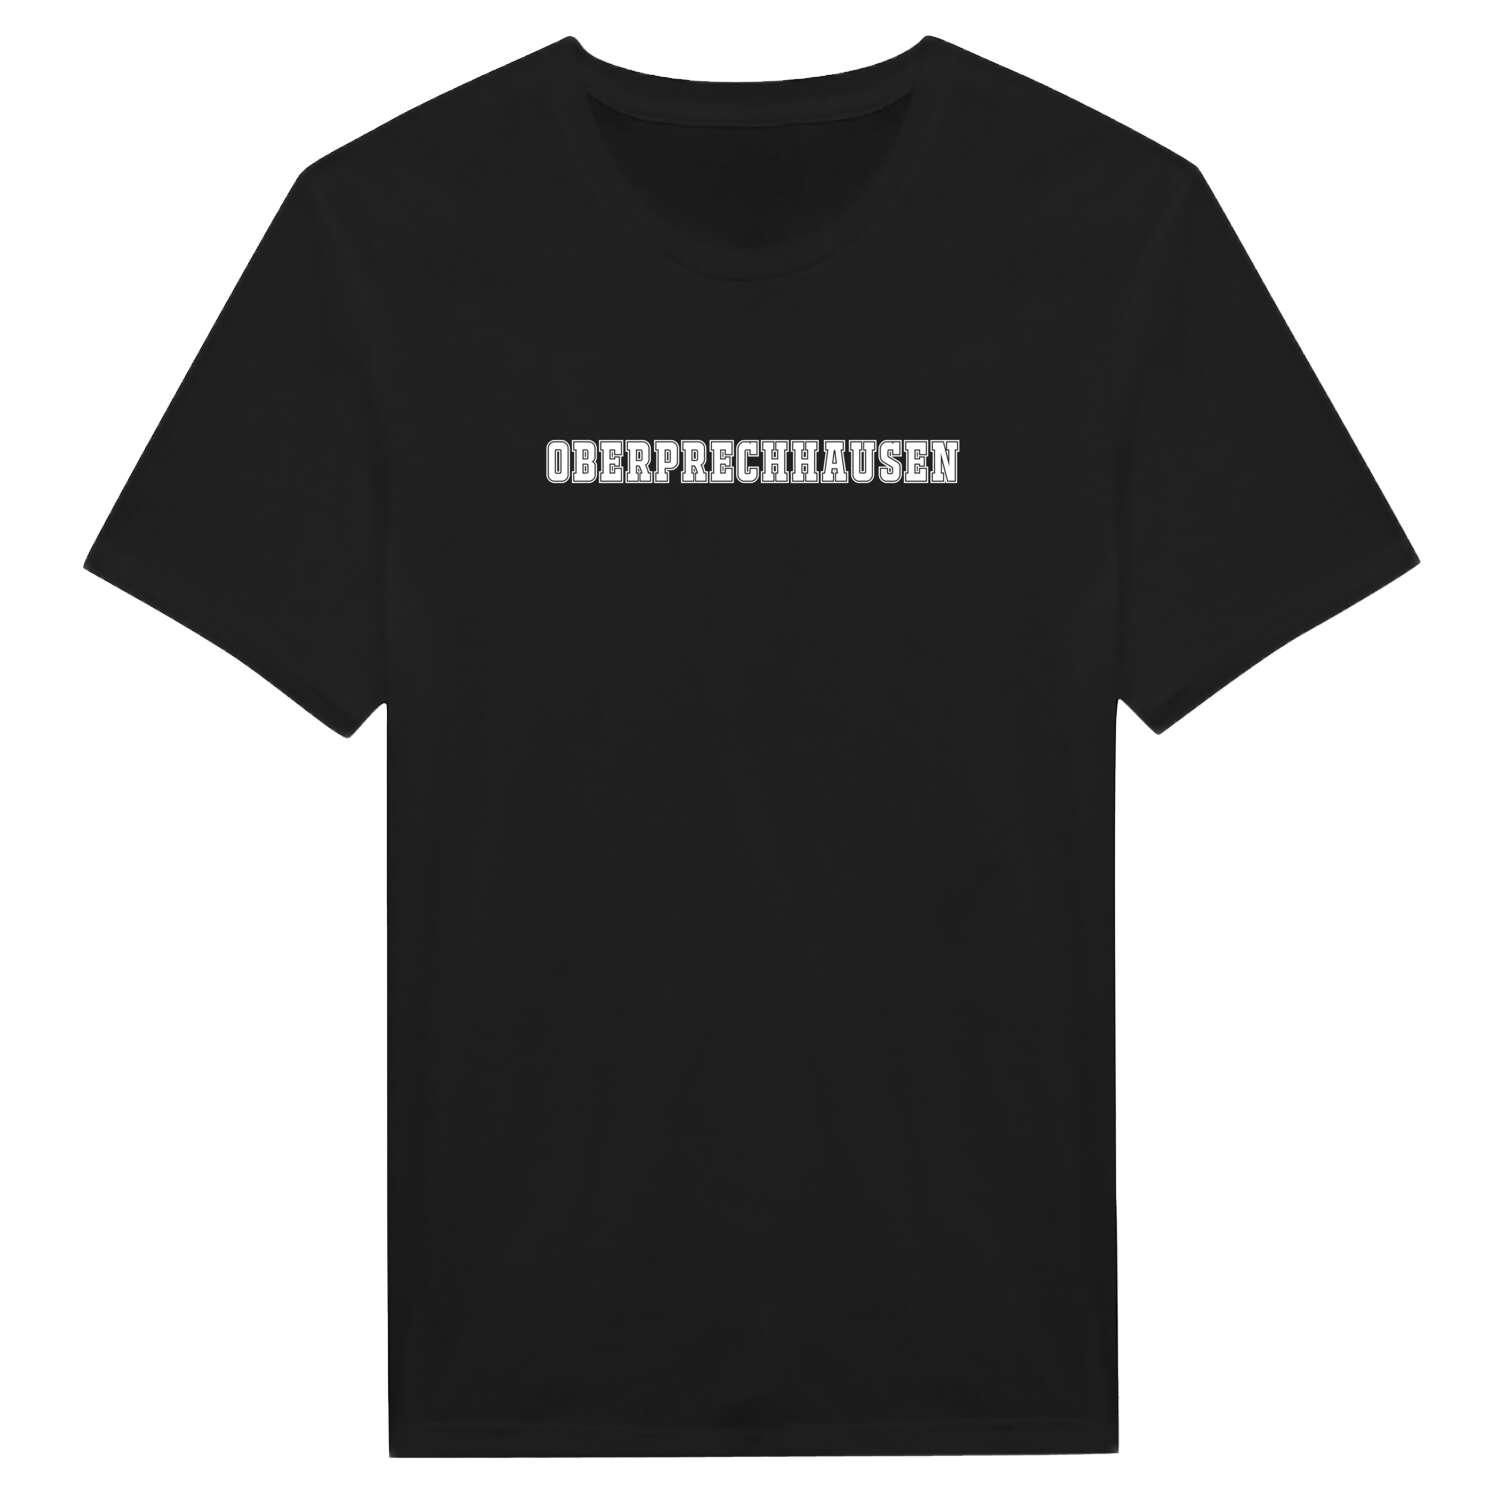 Oberprechhausen T-Shirt »Classic«